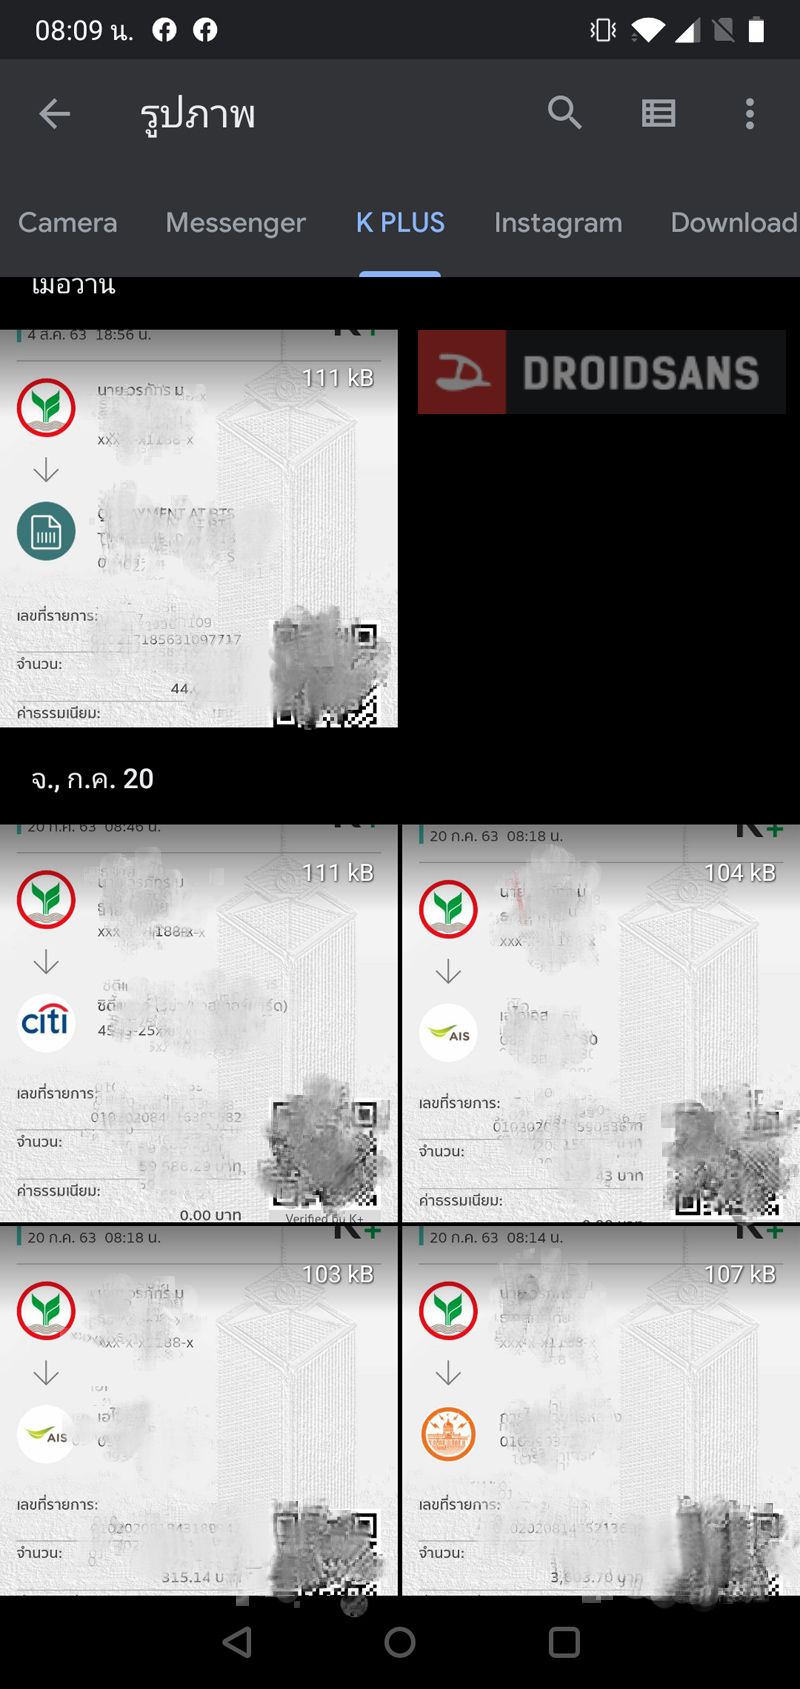 เก็บภาพ ข้อมูล และไฟล์บนมือถือให้ปลอดภัย ด้วย Safe Folder ฟีเจอร์ใหม่จาก Files by Google